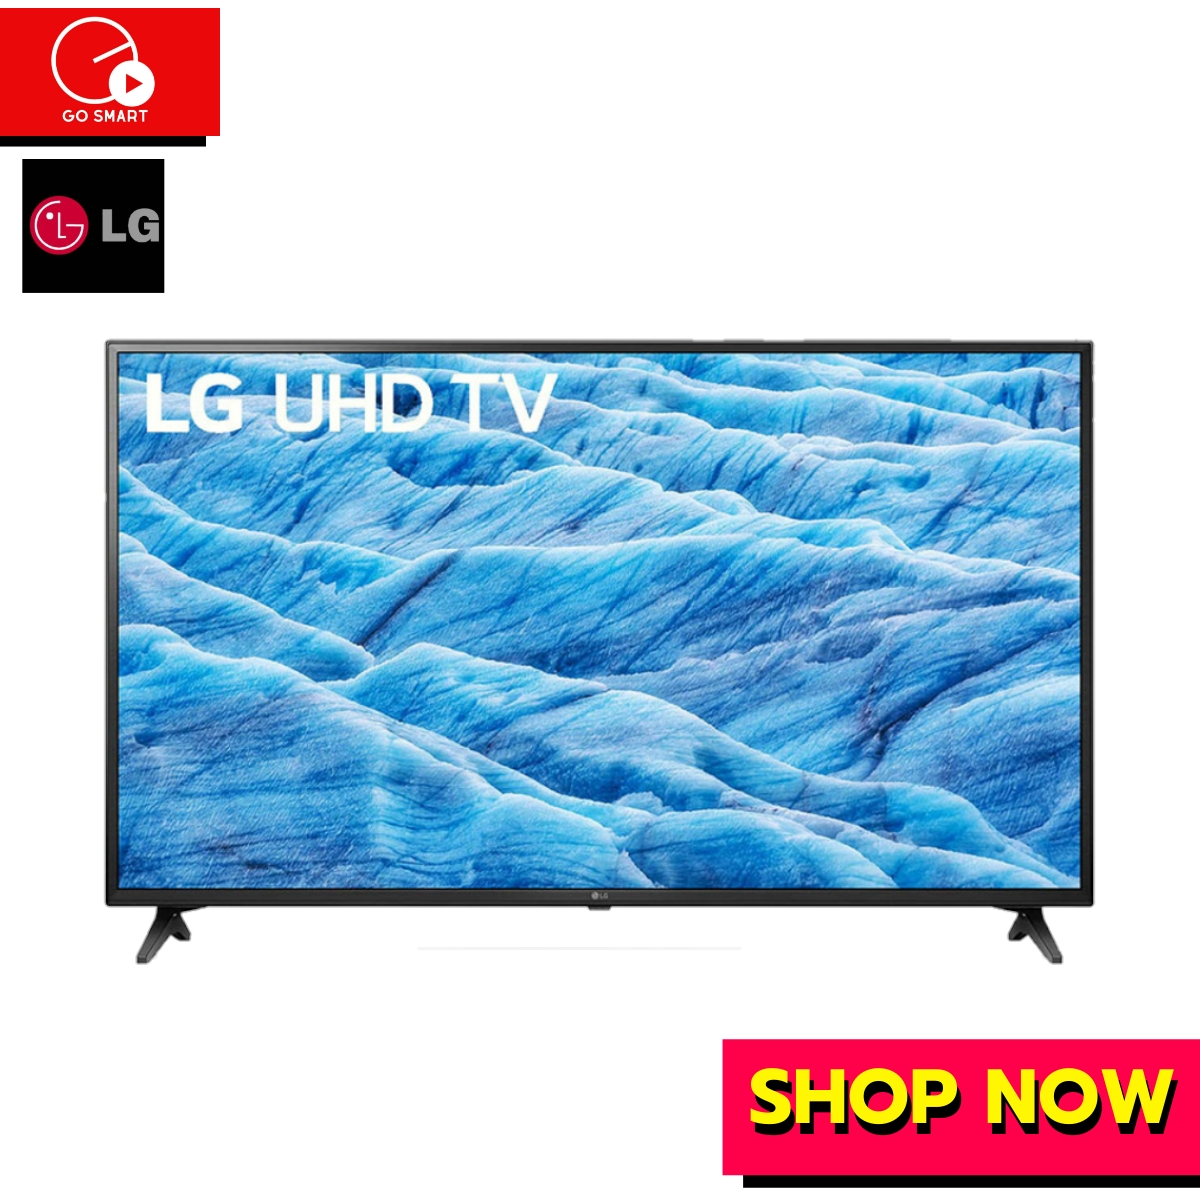 LG UHD TV 4K รุ่น 65UM7290PTD | Ultra HD Smart TV ThinQ AI | DTS Virtual : X 4Kประกัน 1ปี